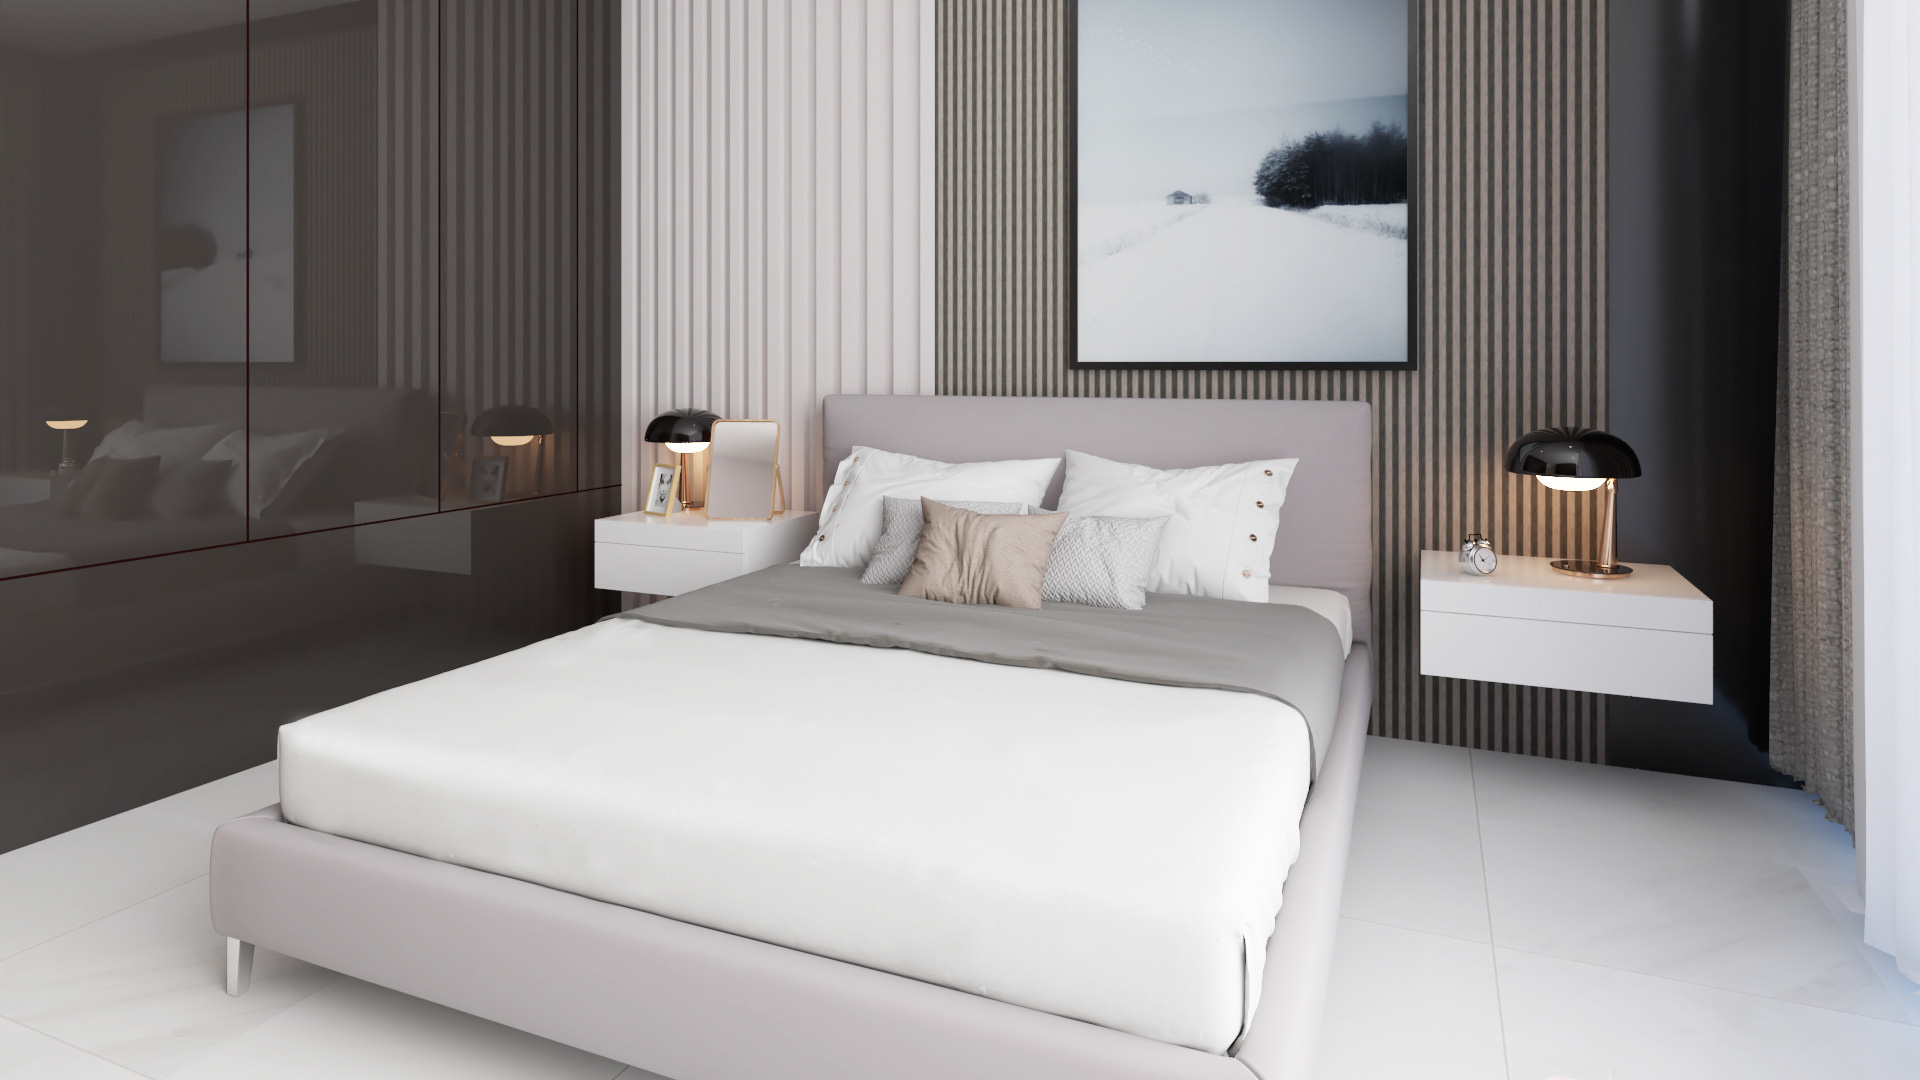  Phòng ngủ master với nội thất đơn giản, màu sắc trẻ trung.